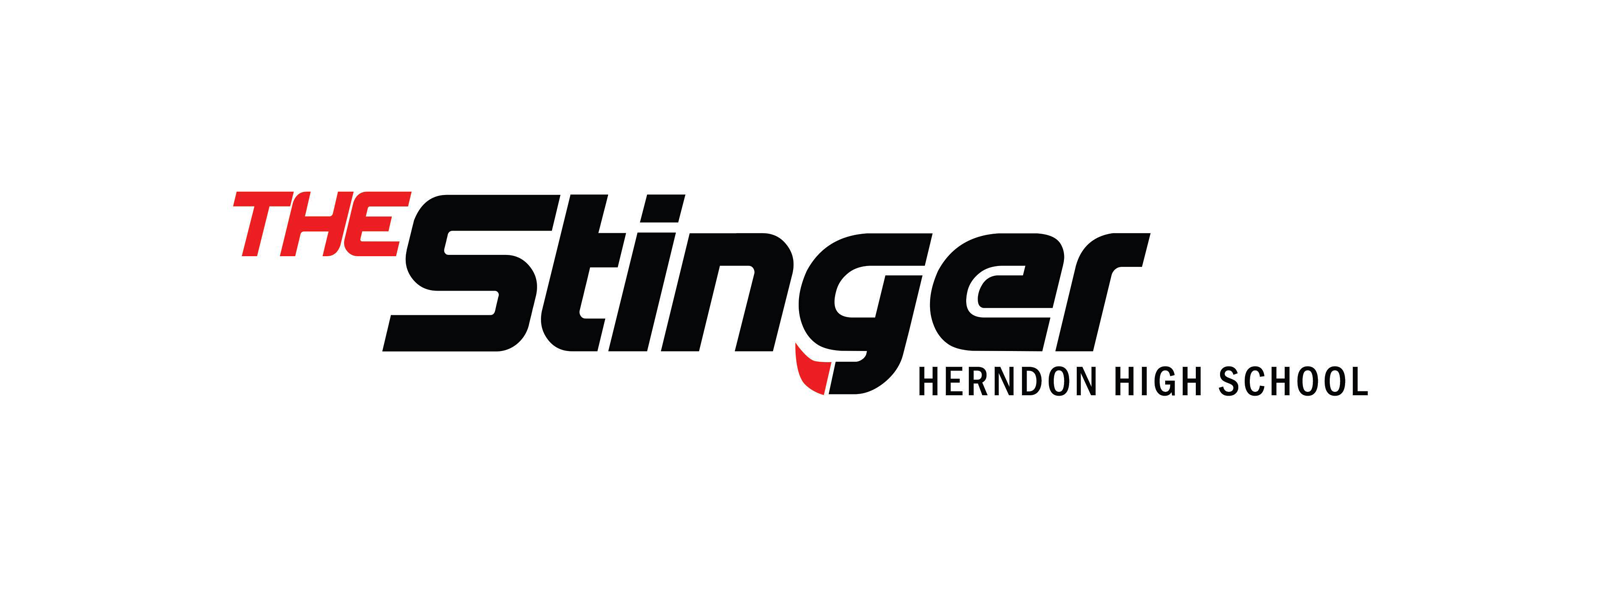 The Stinger logo